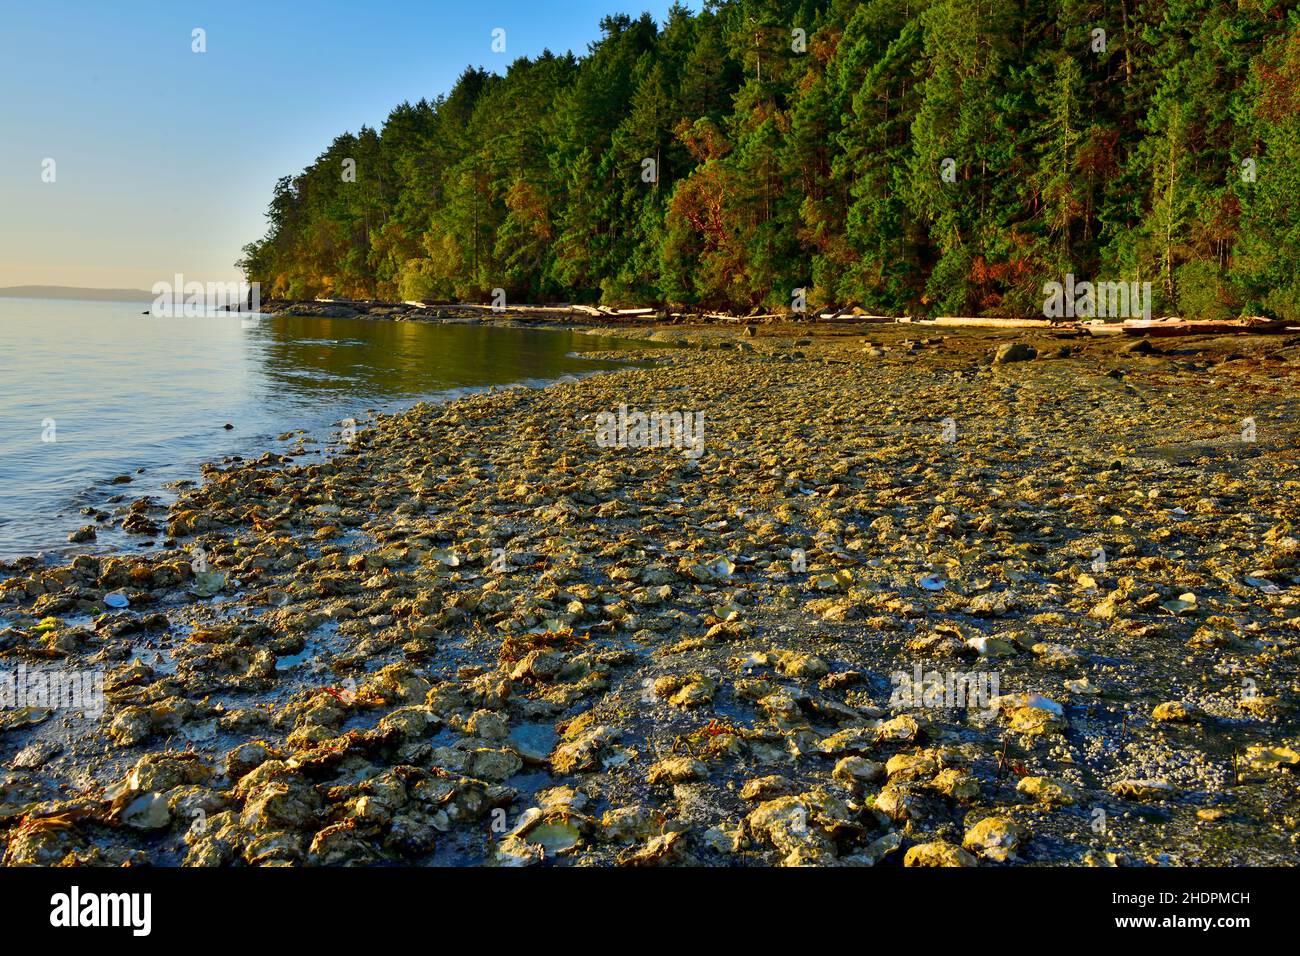 Una playa en la costa este de la isla de Vancouver cubierta de ostras salvajes aferradas a la orilla rocosa del mar. Foto de stock